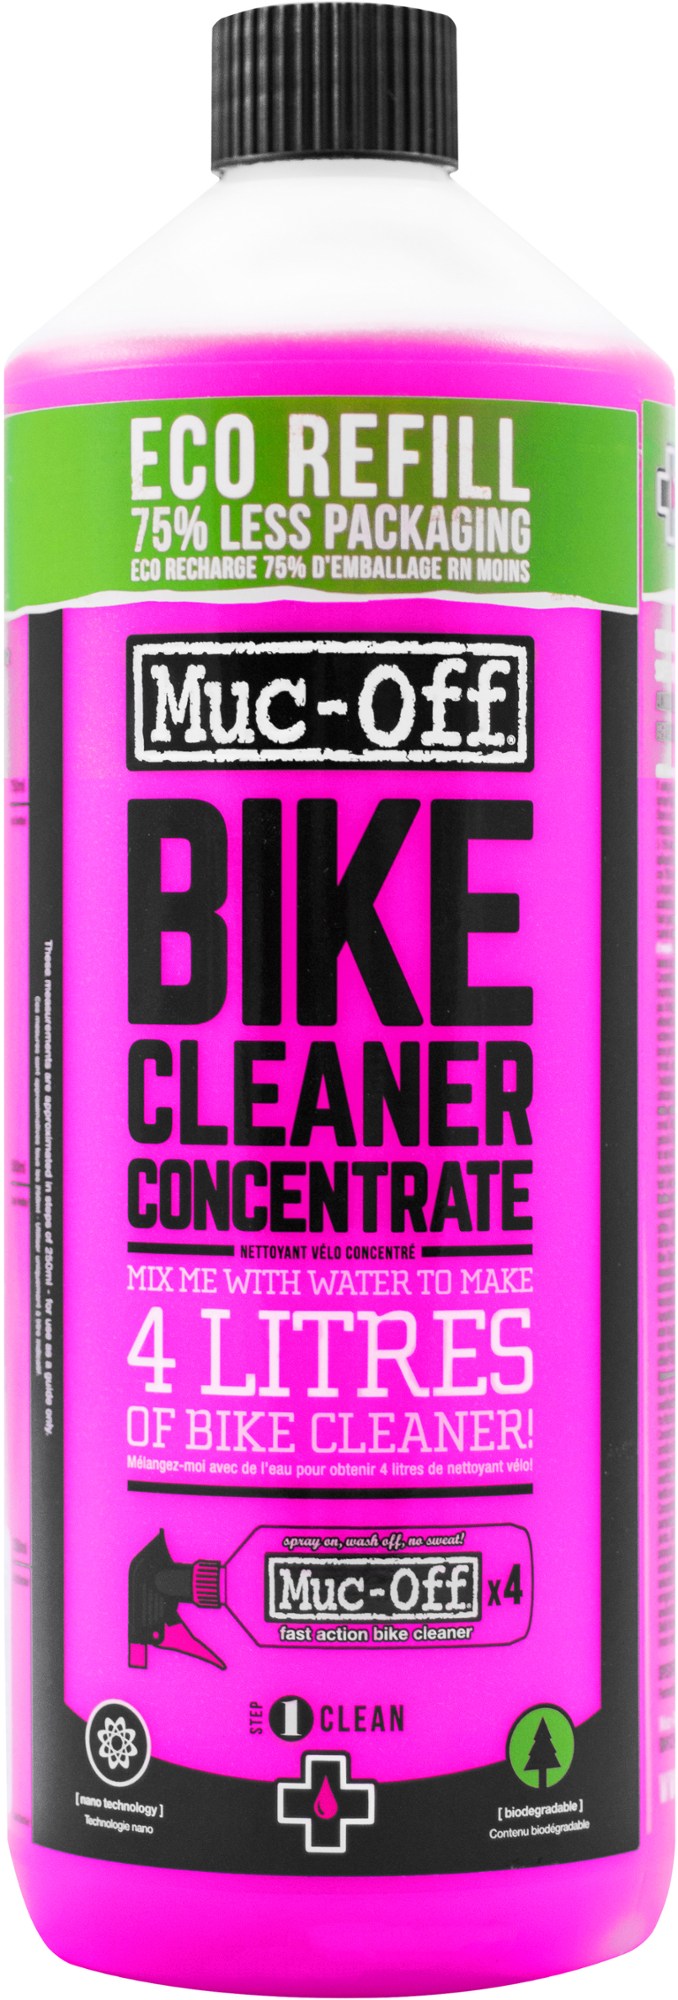 Концентрат для чистки велосипедов Muc-Off очиститель универсальный muc off cycle cleaner 1l